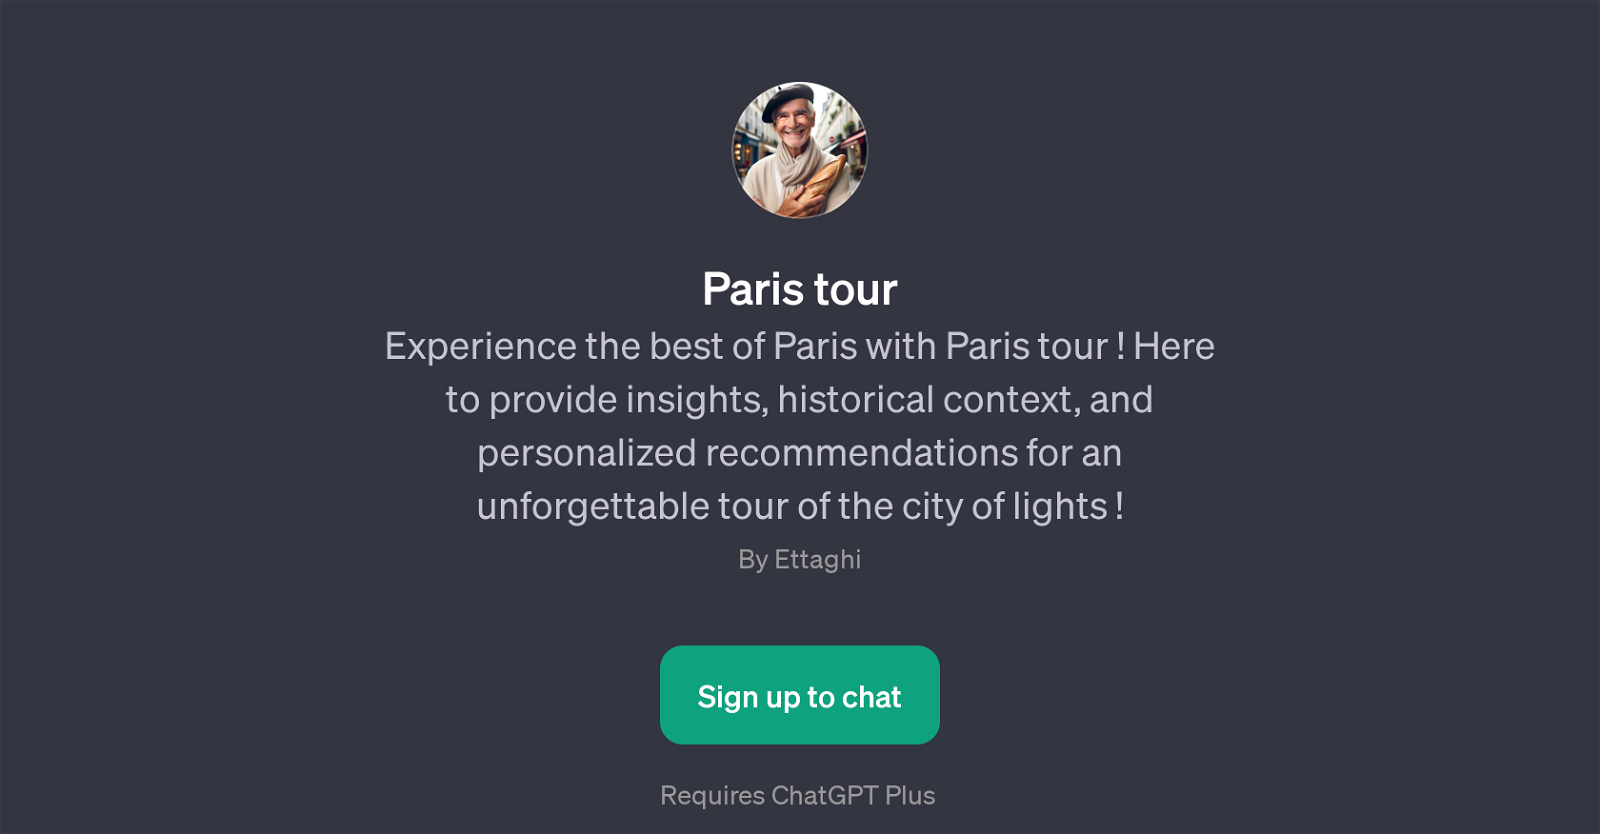 Paris tour website